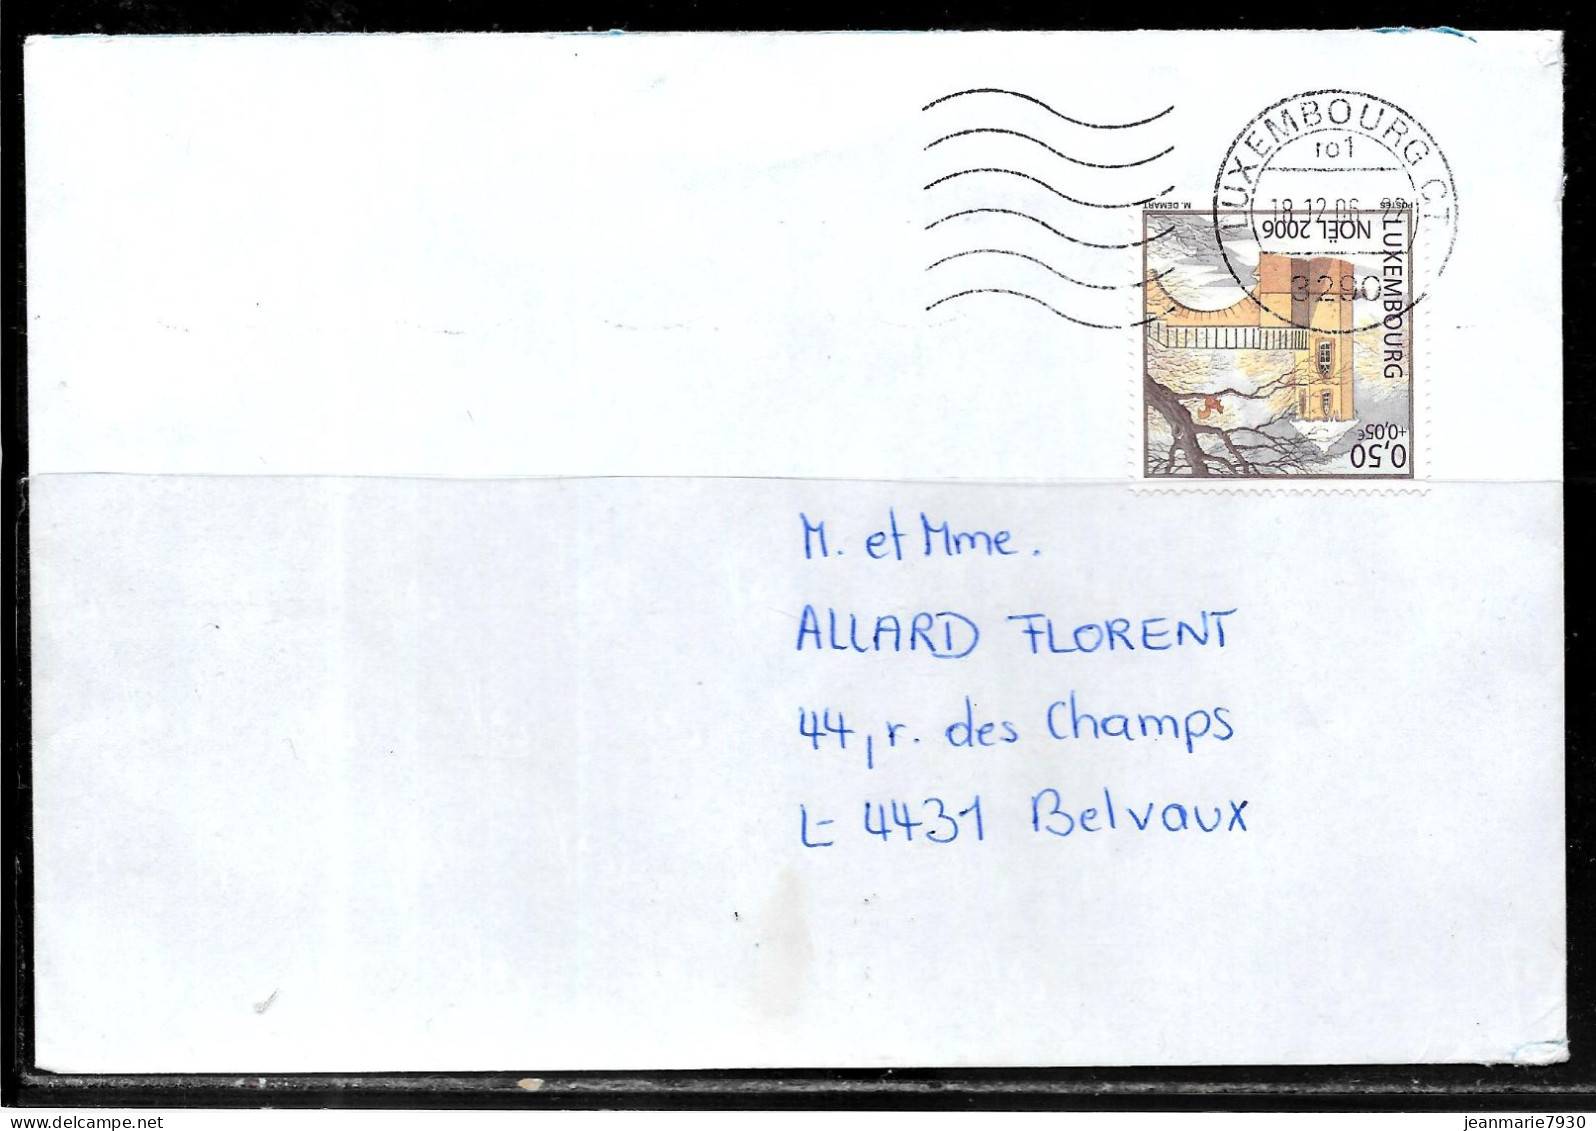 H358 - LETTRE DE LUXEMBOURG DU 18/12/06 - Briefe U. Dokumente